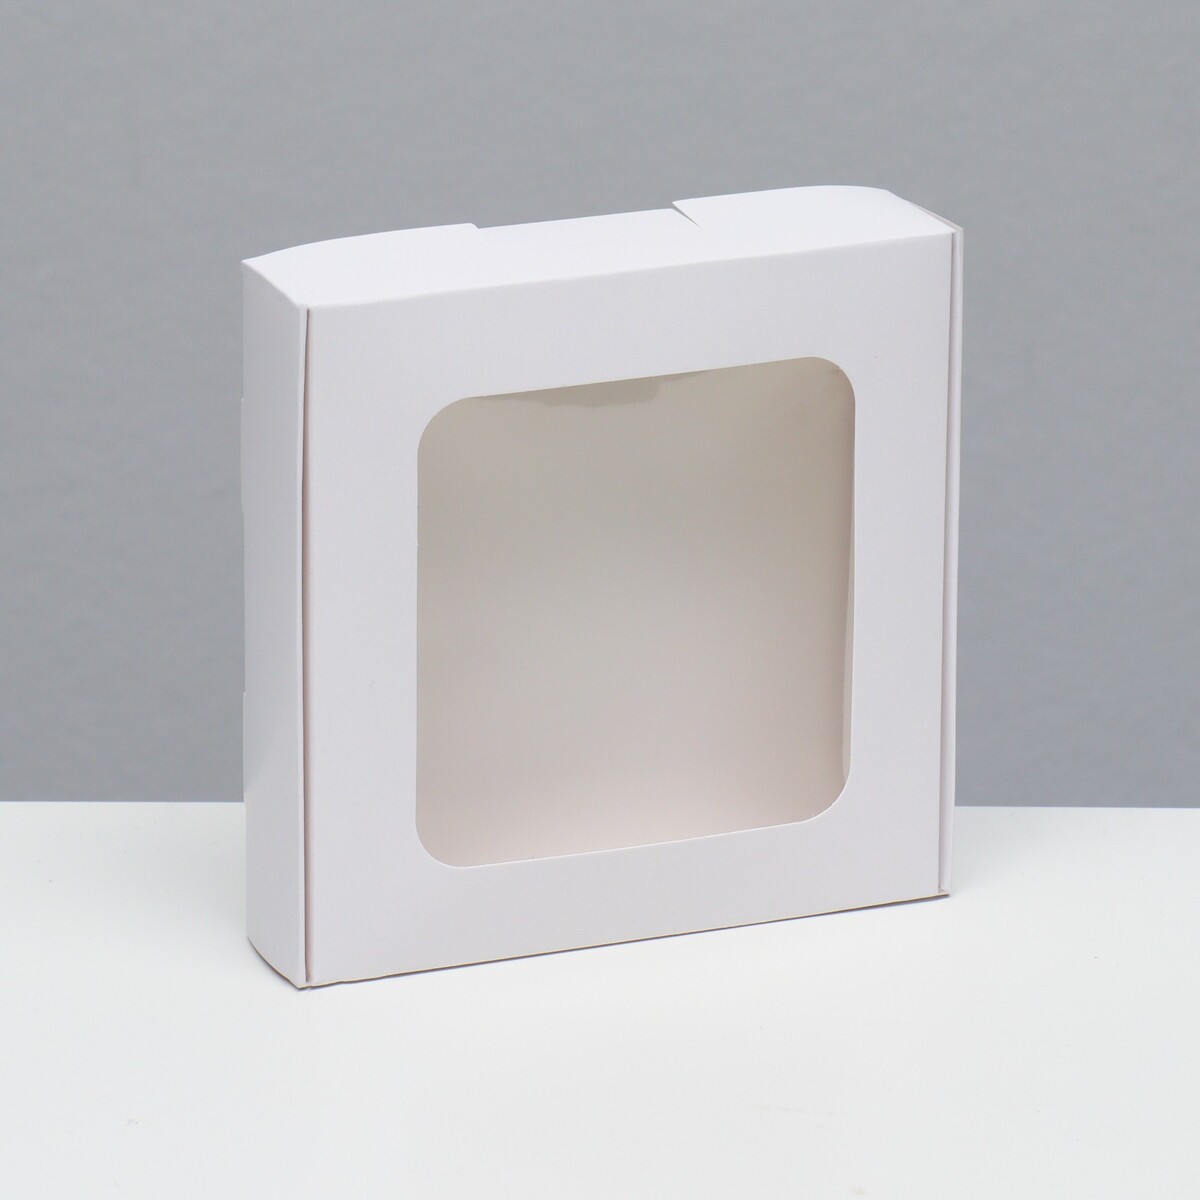 Коробка самосборная, белая, 13 х 13 х 3 см коробка самосборная белая 19 х 19 х 3 см